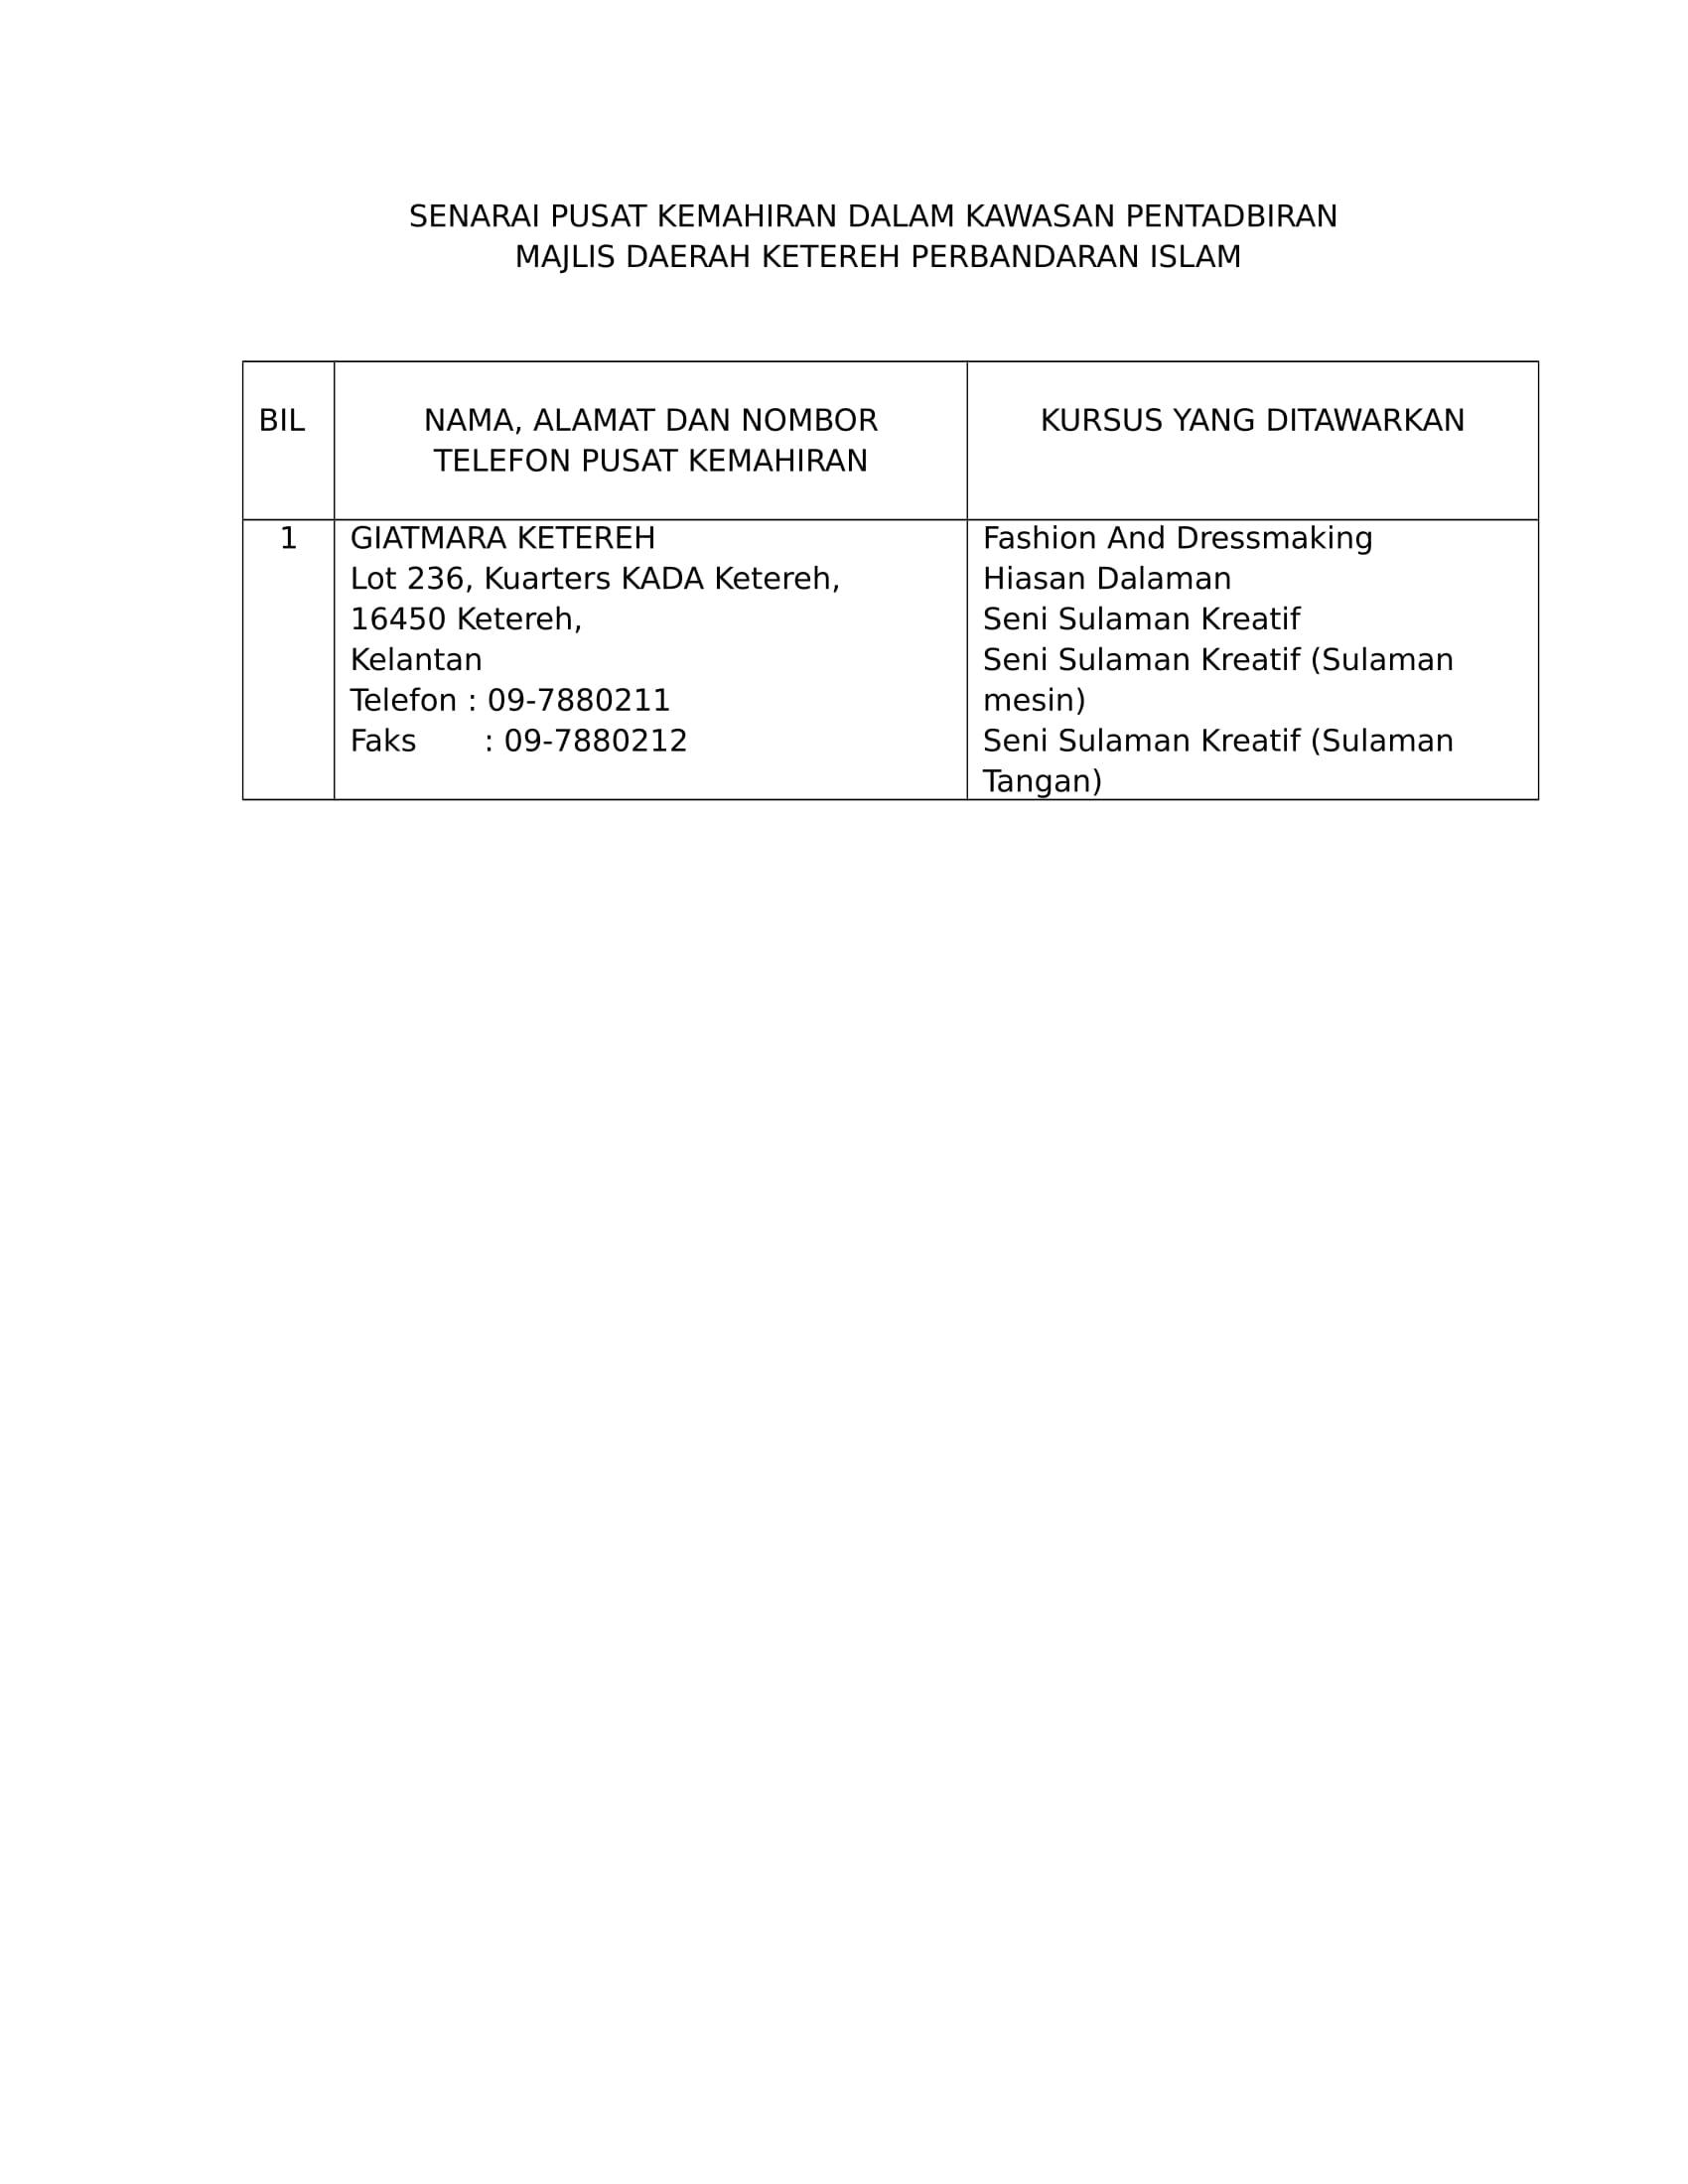 Senarai Pusat Kemahiran Dalam Kawasan Pentadbiran Majlis Daerah Ketereh Perbandaran Islam 1 0